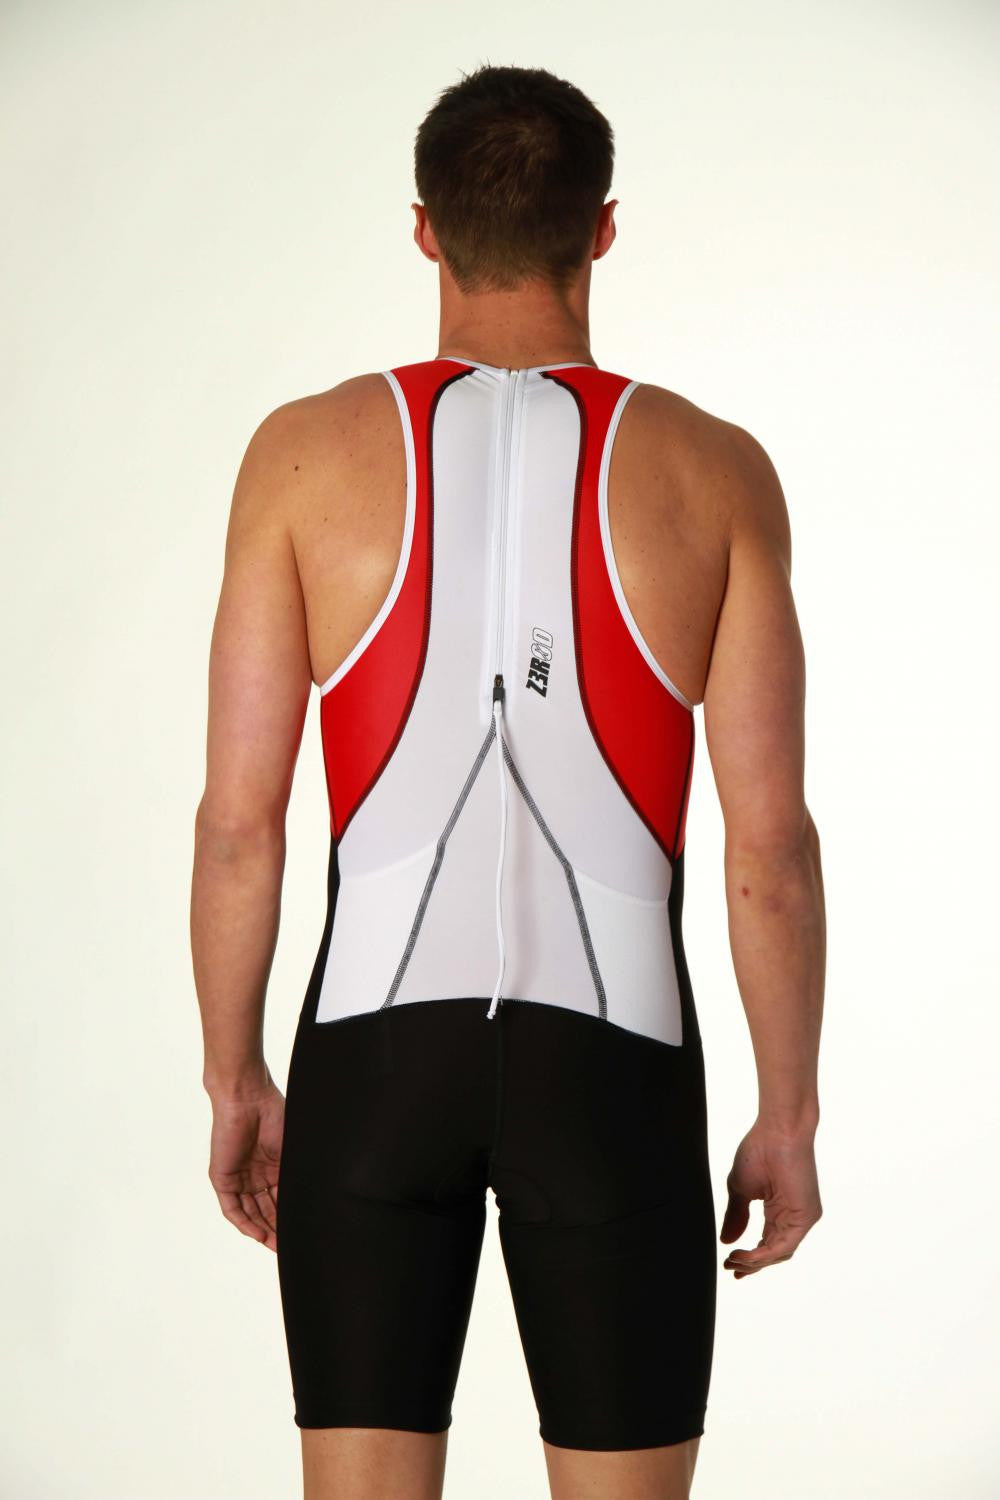 USuit Red - Universal (male/female) Triathlon Suit